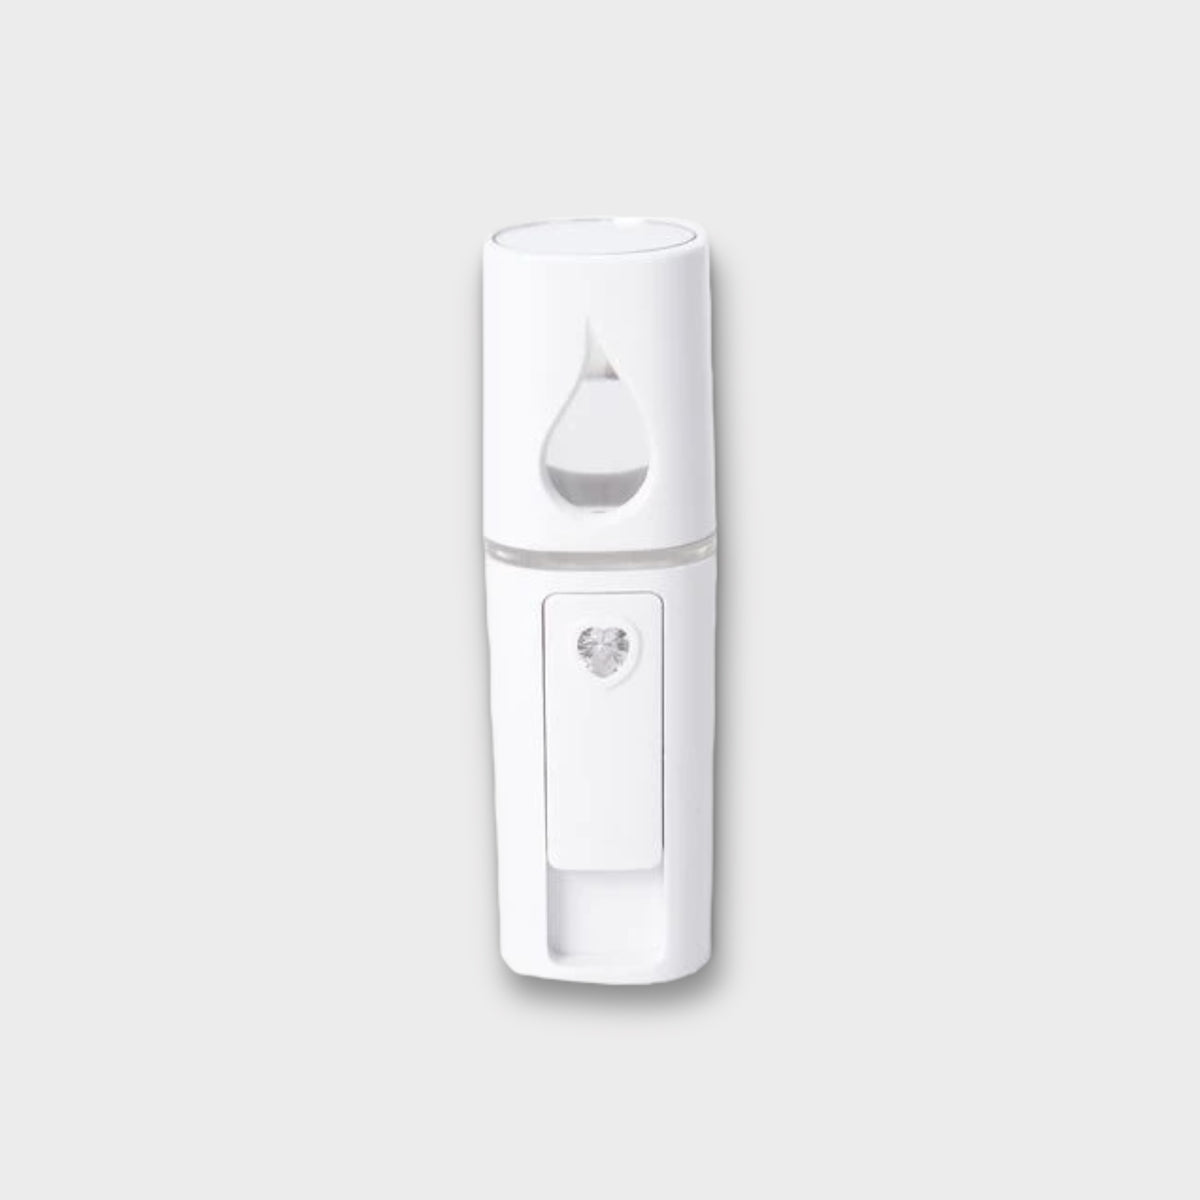 Portable Home|Car Spray Humidifier|Diffuser